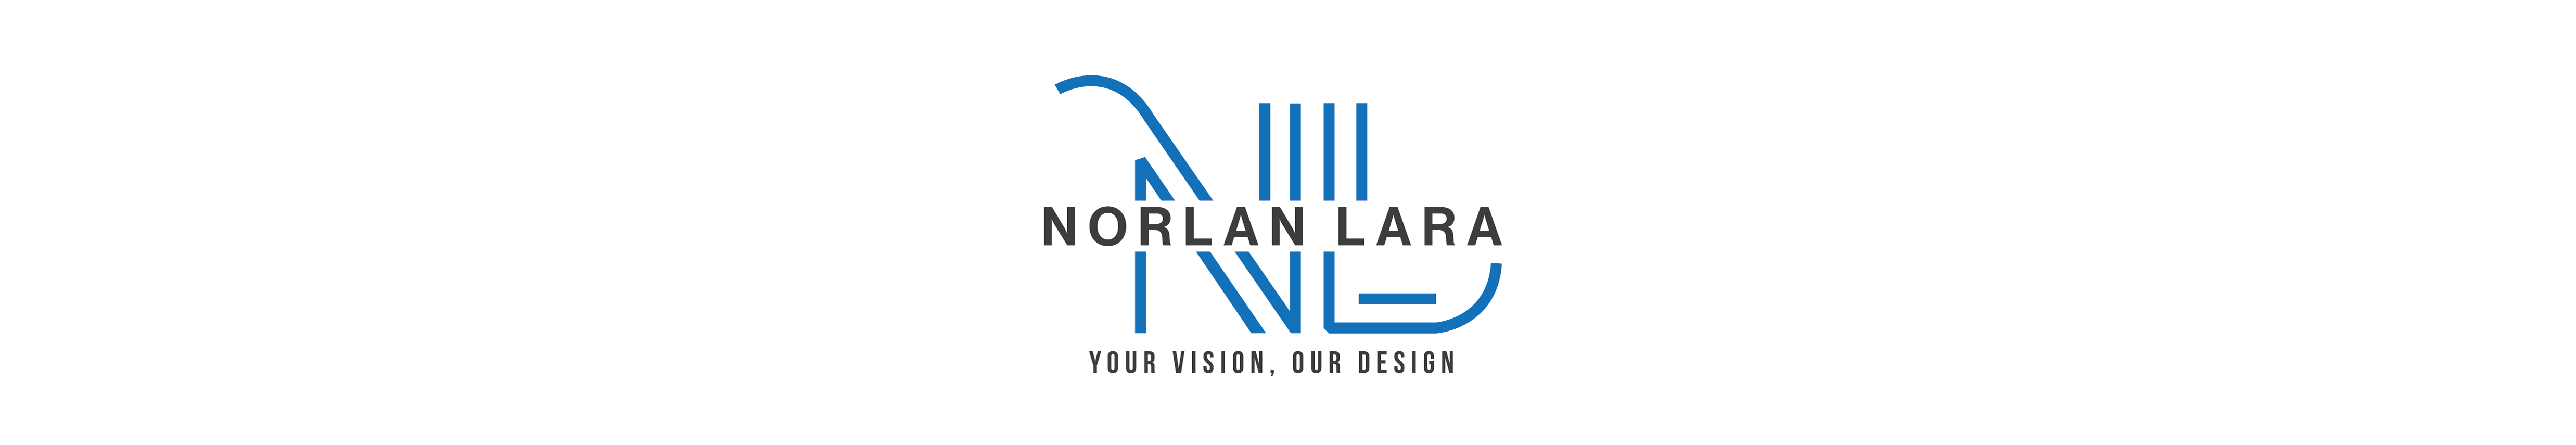 Norlan Lara's profile banner